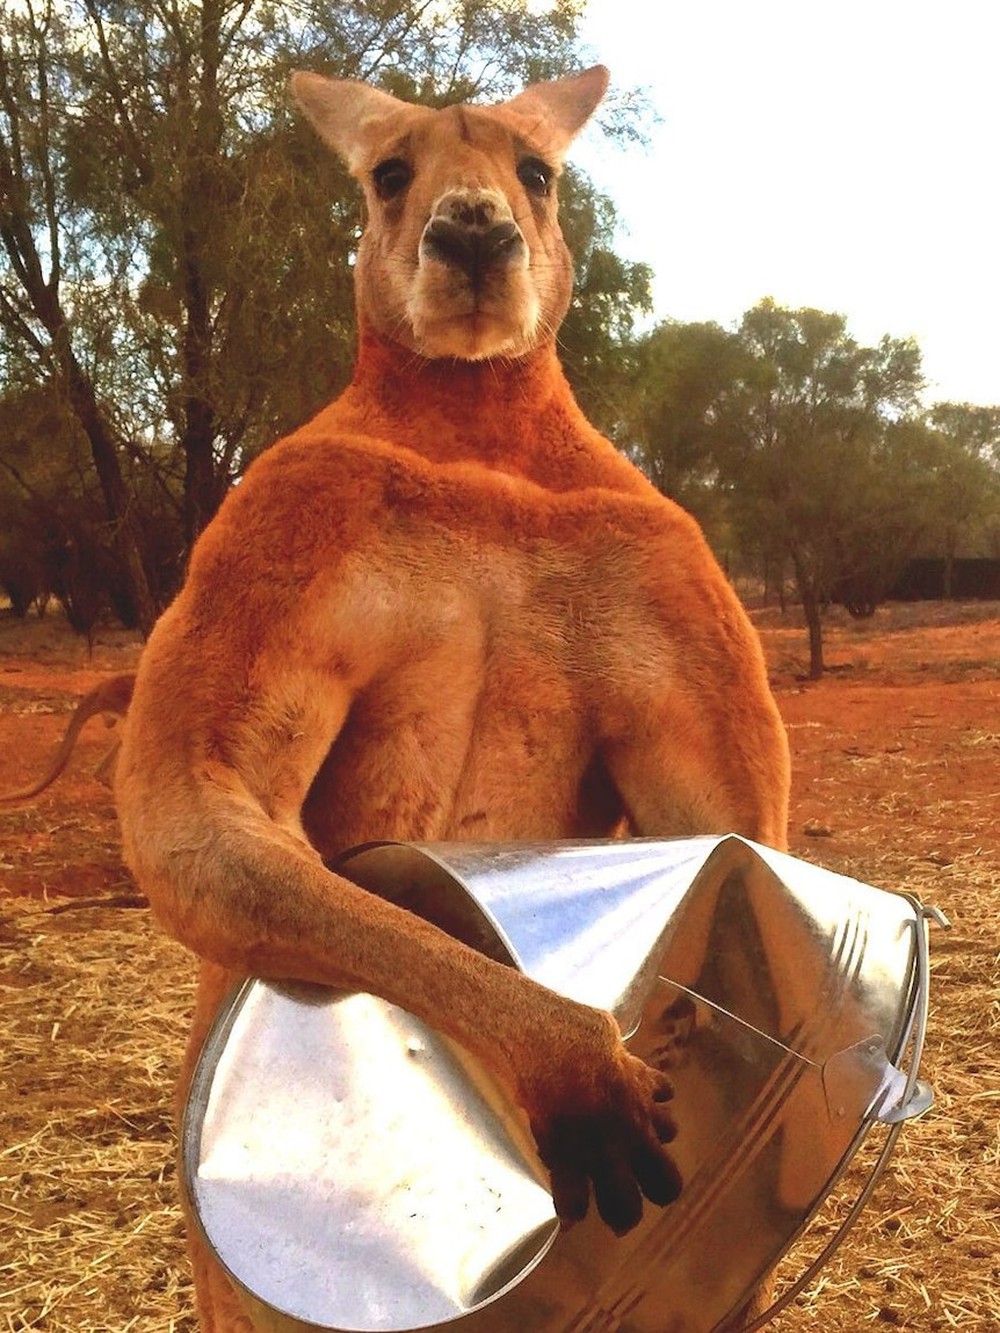 Con người sẽ sớm được cấy gân của kangaroo để phục hồi những chần thương vùng đầu gối - Ảnh 4.